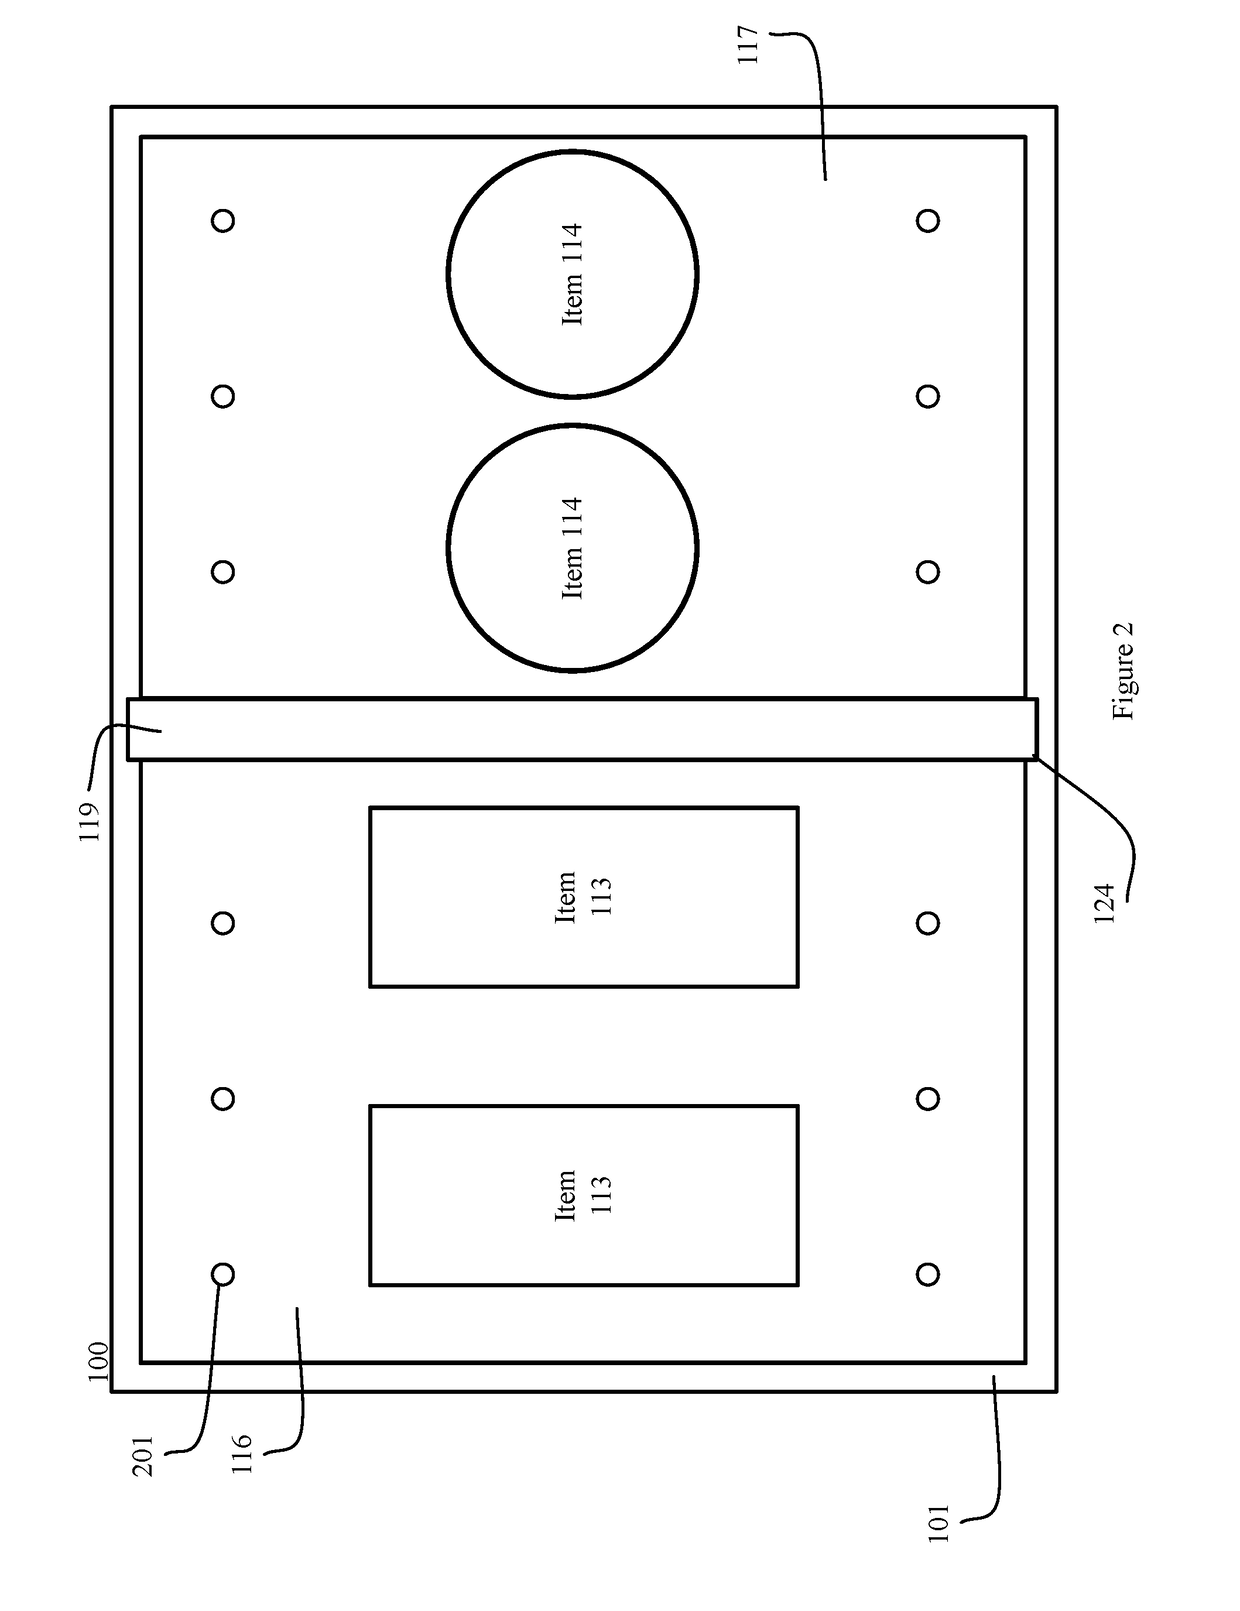 Segmented container with multiple temperature zones